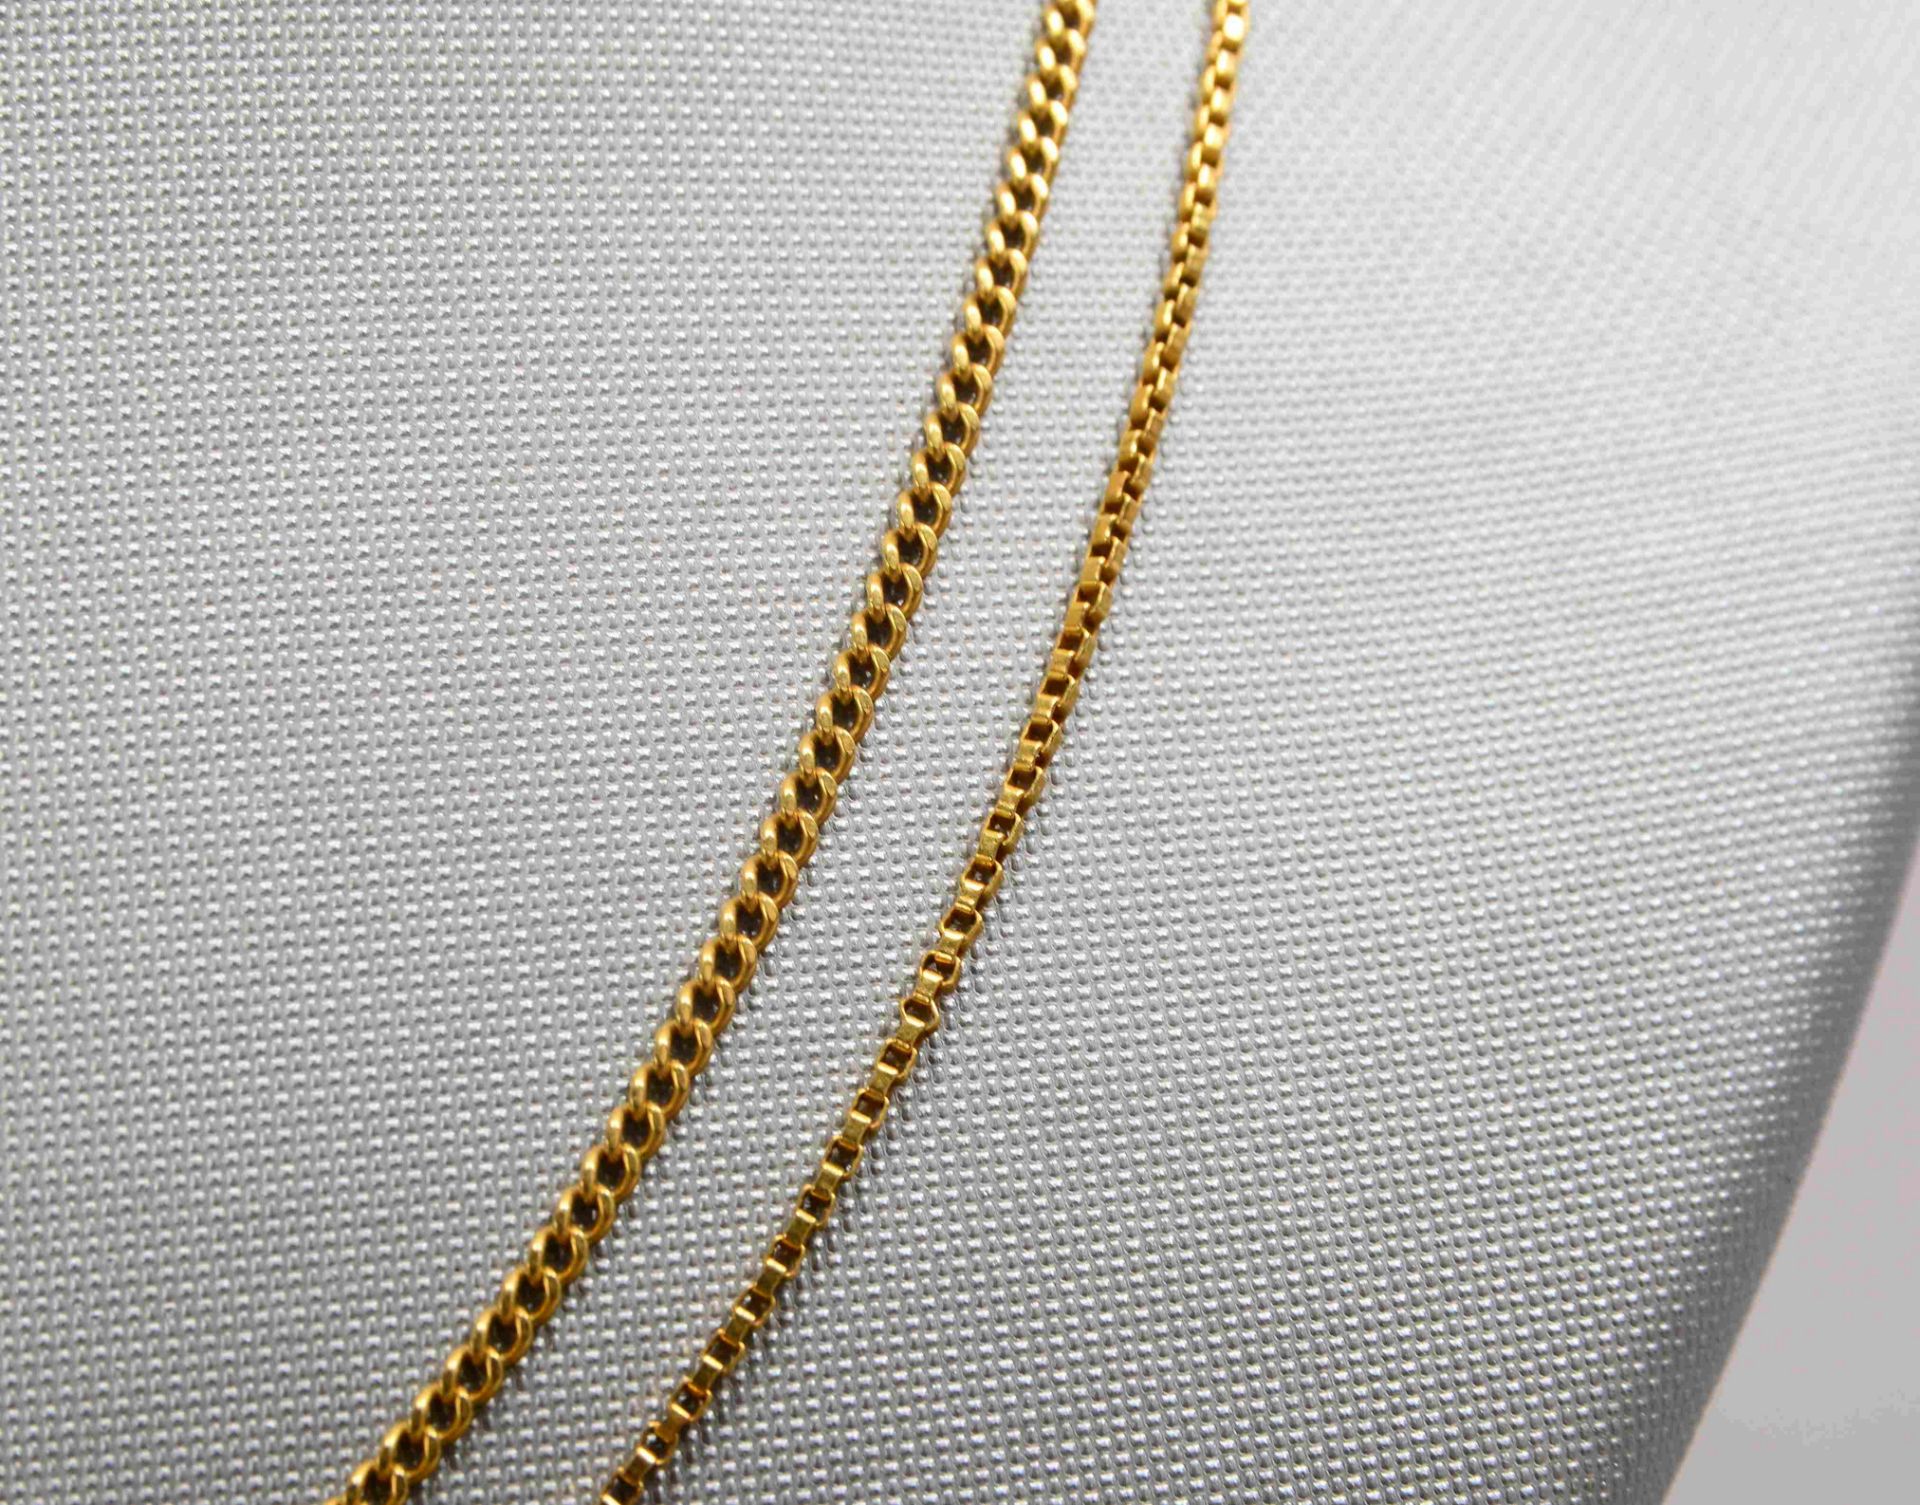 2 Halsketten, 750 GG (gestempelt); Länge 68 cm, und Länge 71 cm, Gewicht zusammen 15,50 g - Bild 2 aus 2